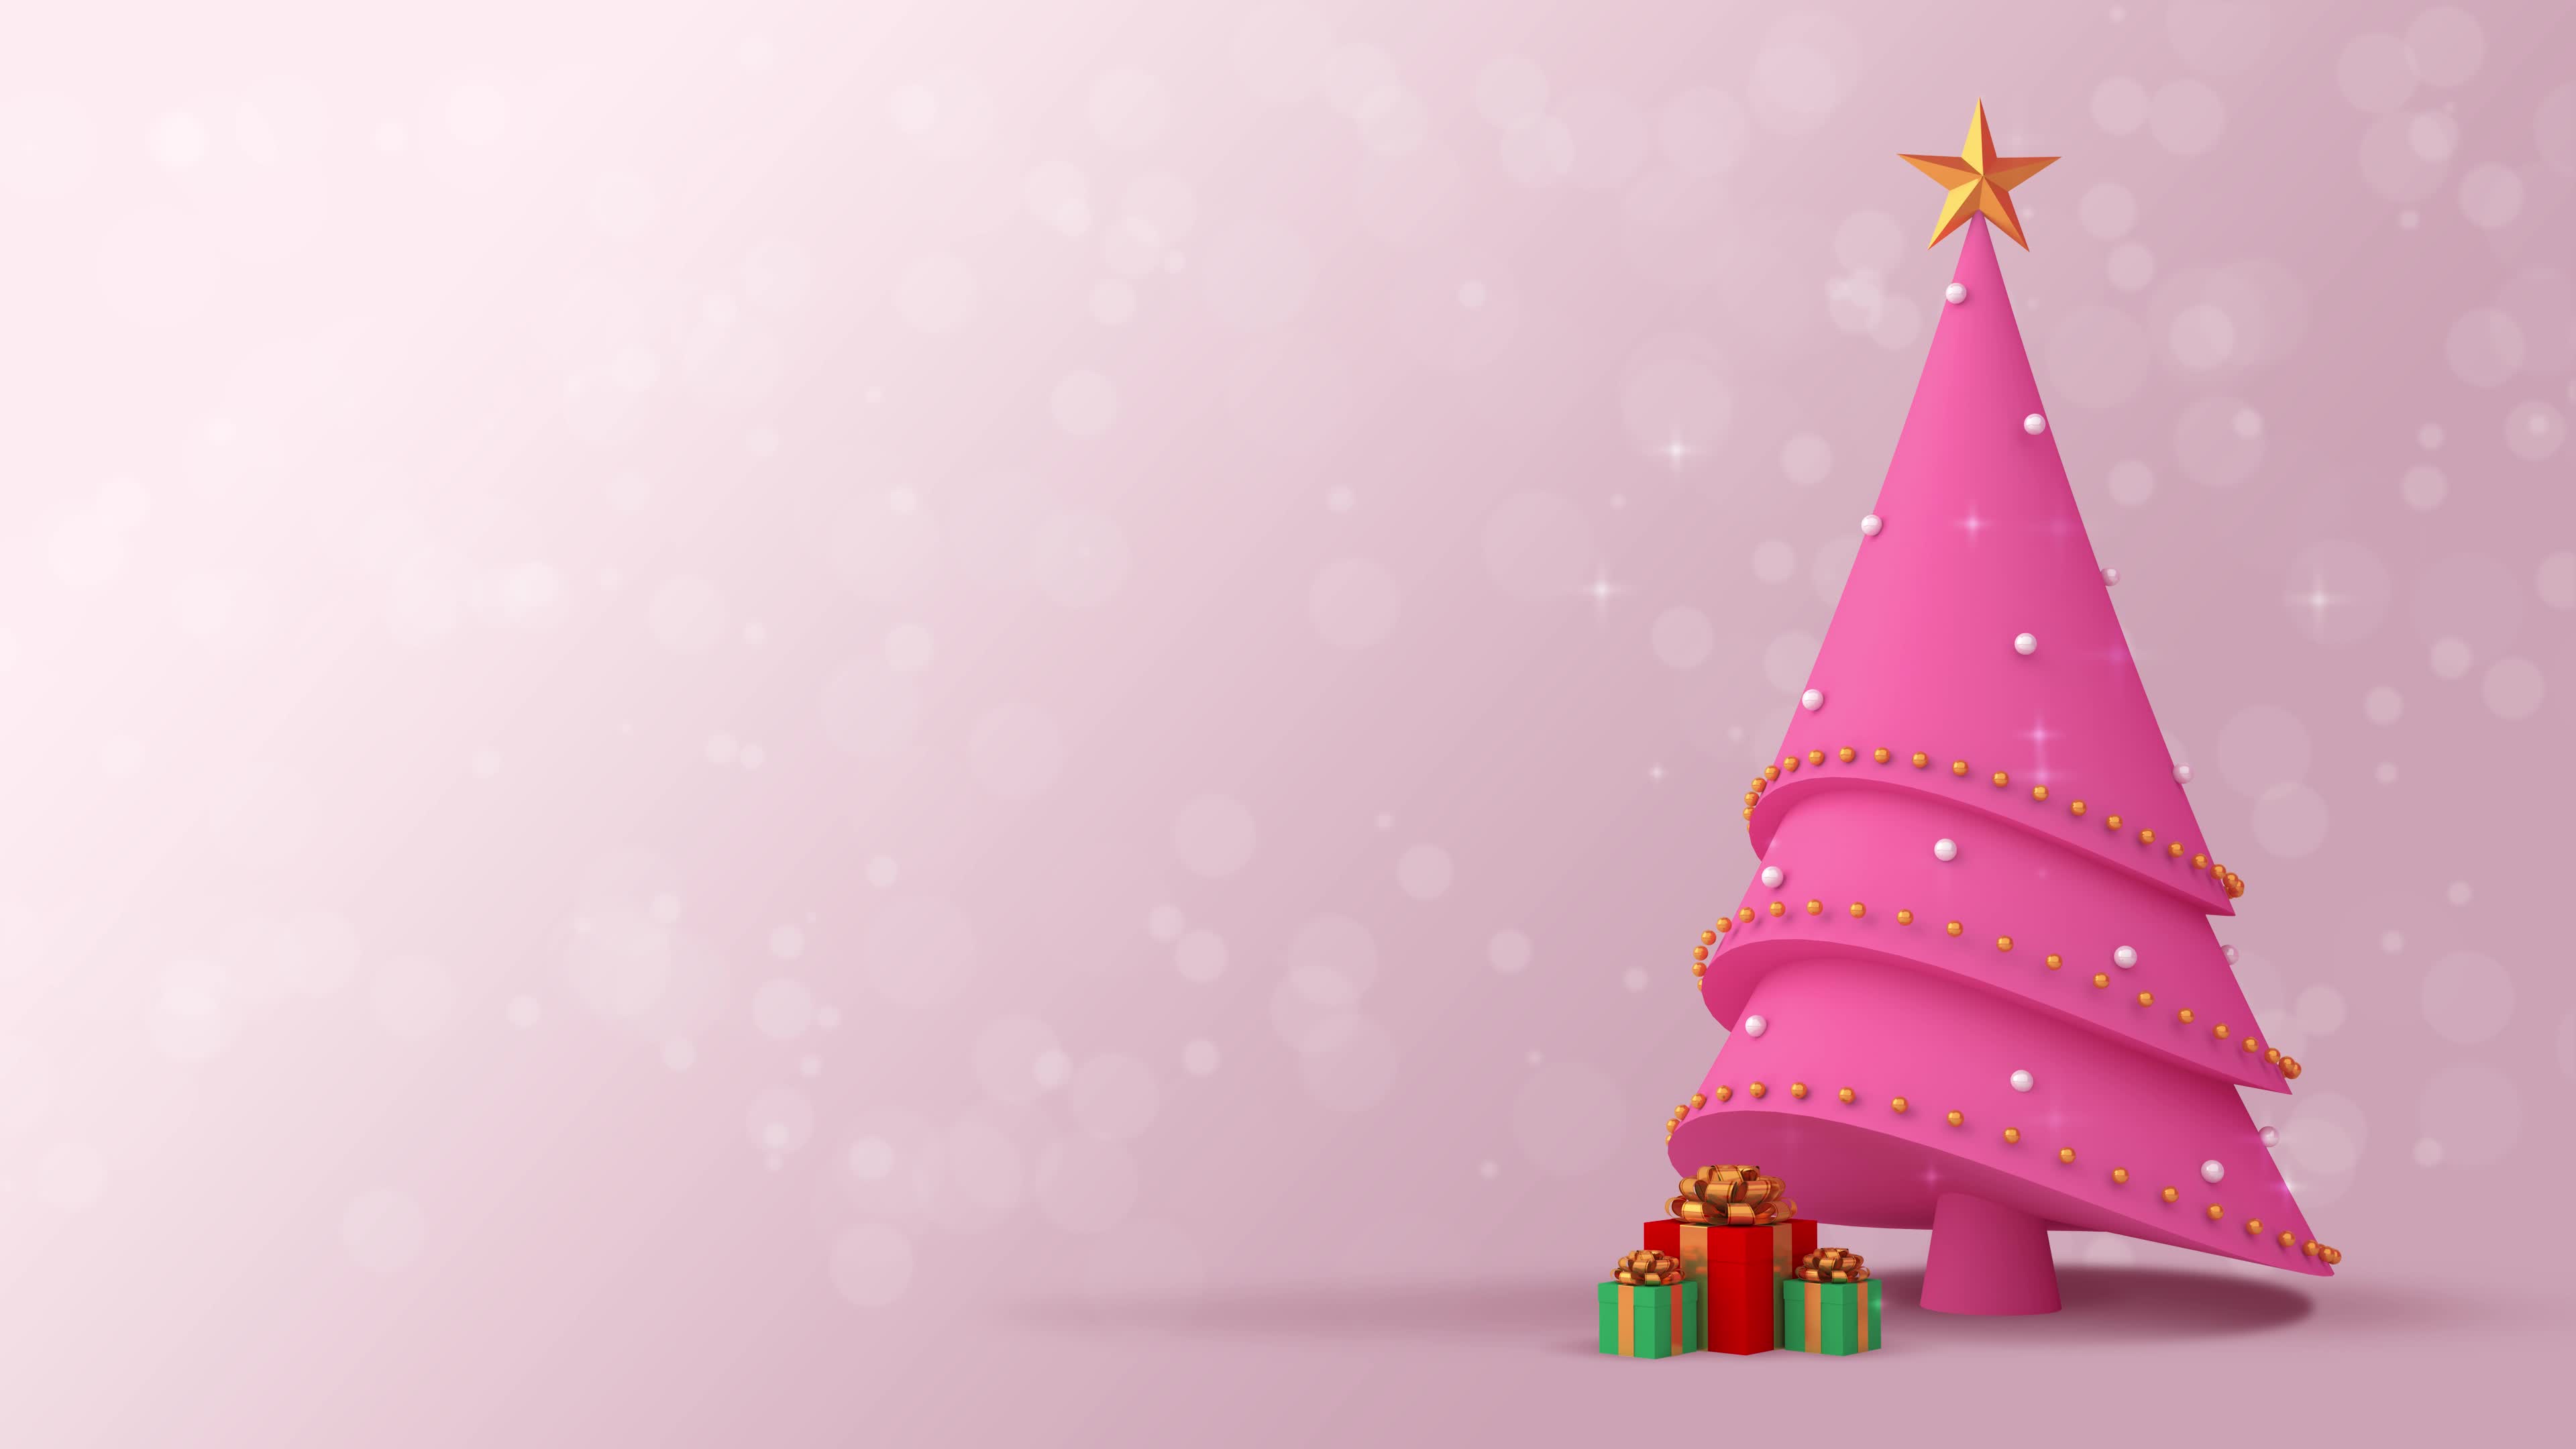 Video nền Giáng Sinh màu hồng sẽ nhanh chóng làm cho những người xem thấy được sự ngọt ngào, dịu dàng của bầu trời vào thời điểm này. Cùng thưởng thức những hình ảnh này để có được cái nhìn tổng thể về tình yêu và niềm vui của mùa lễ hội.